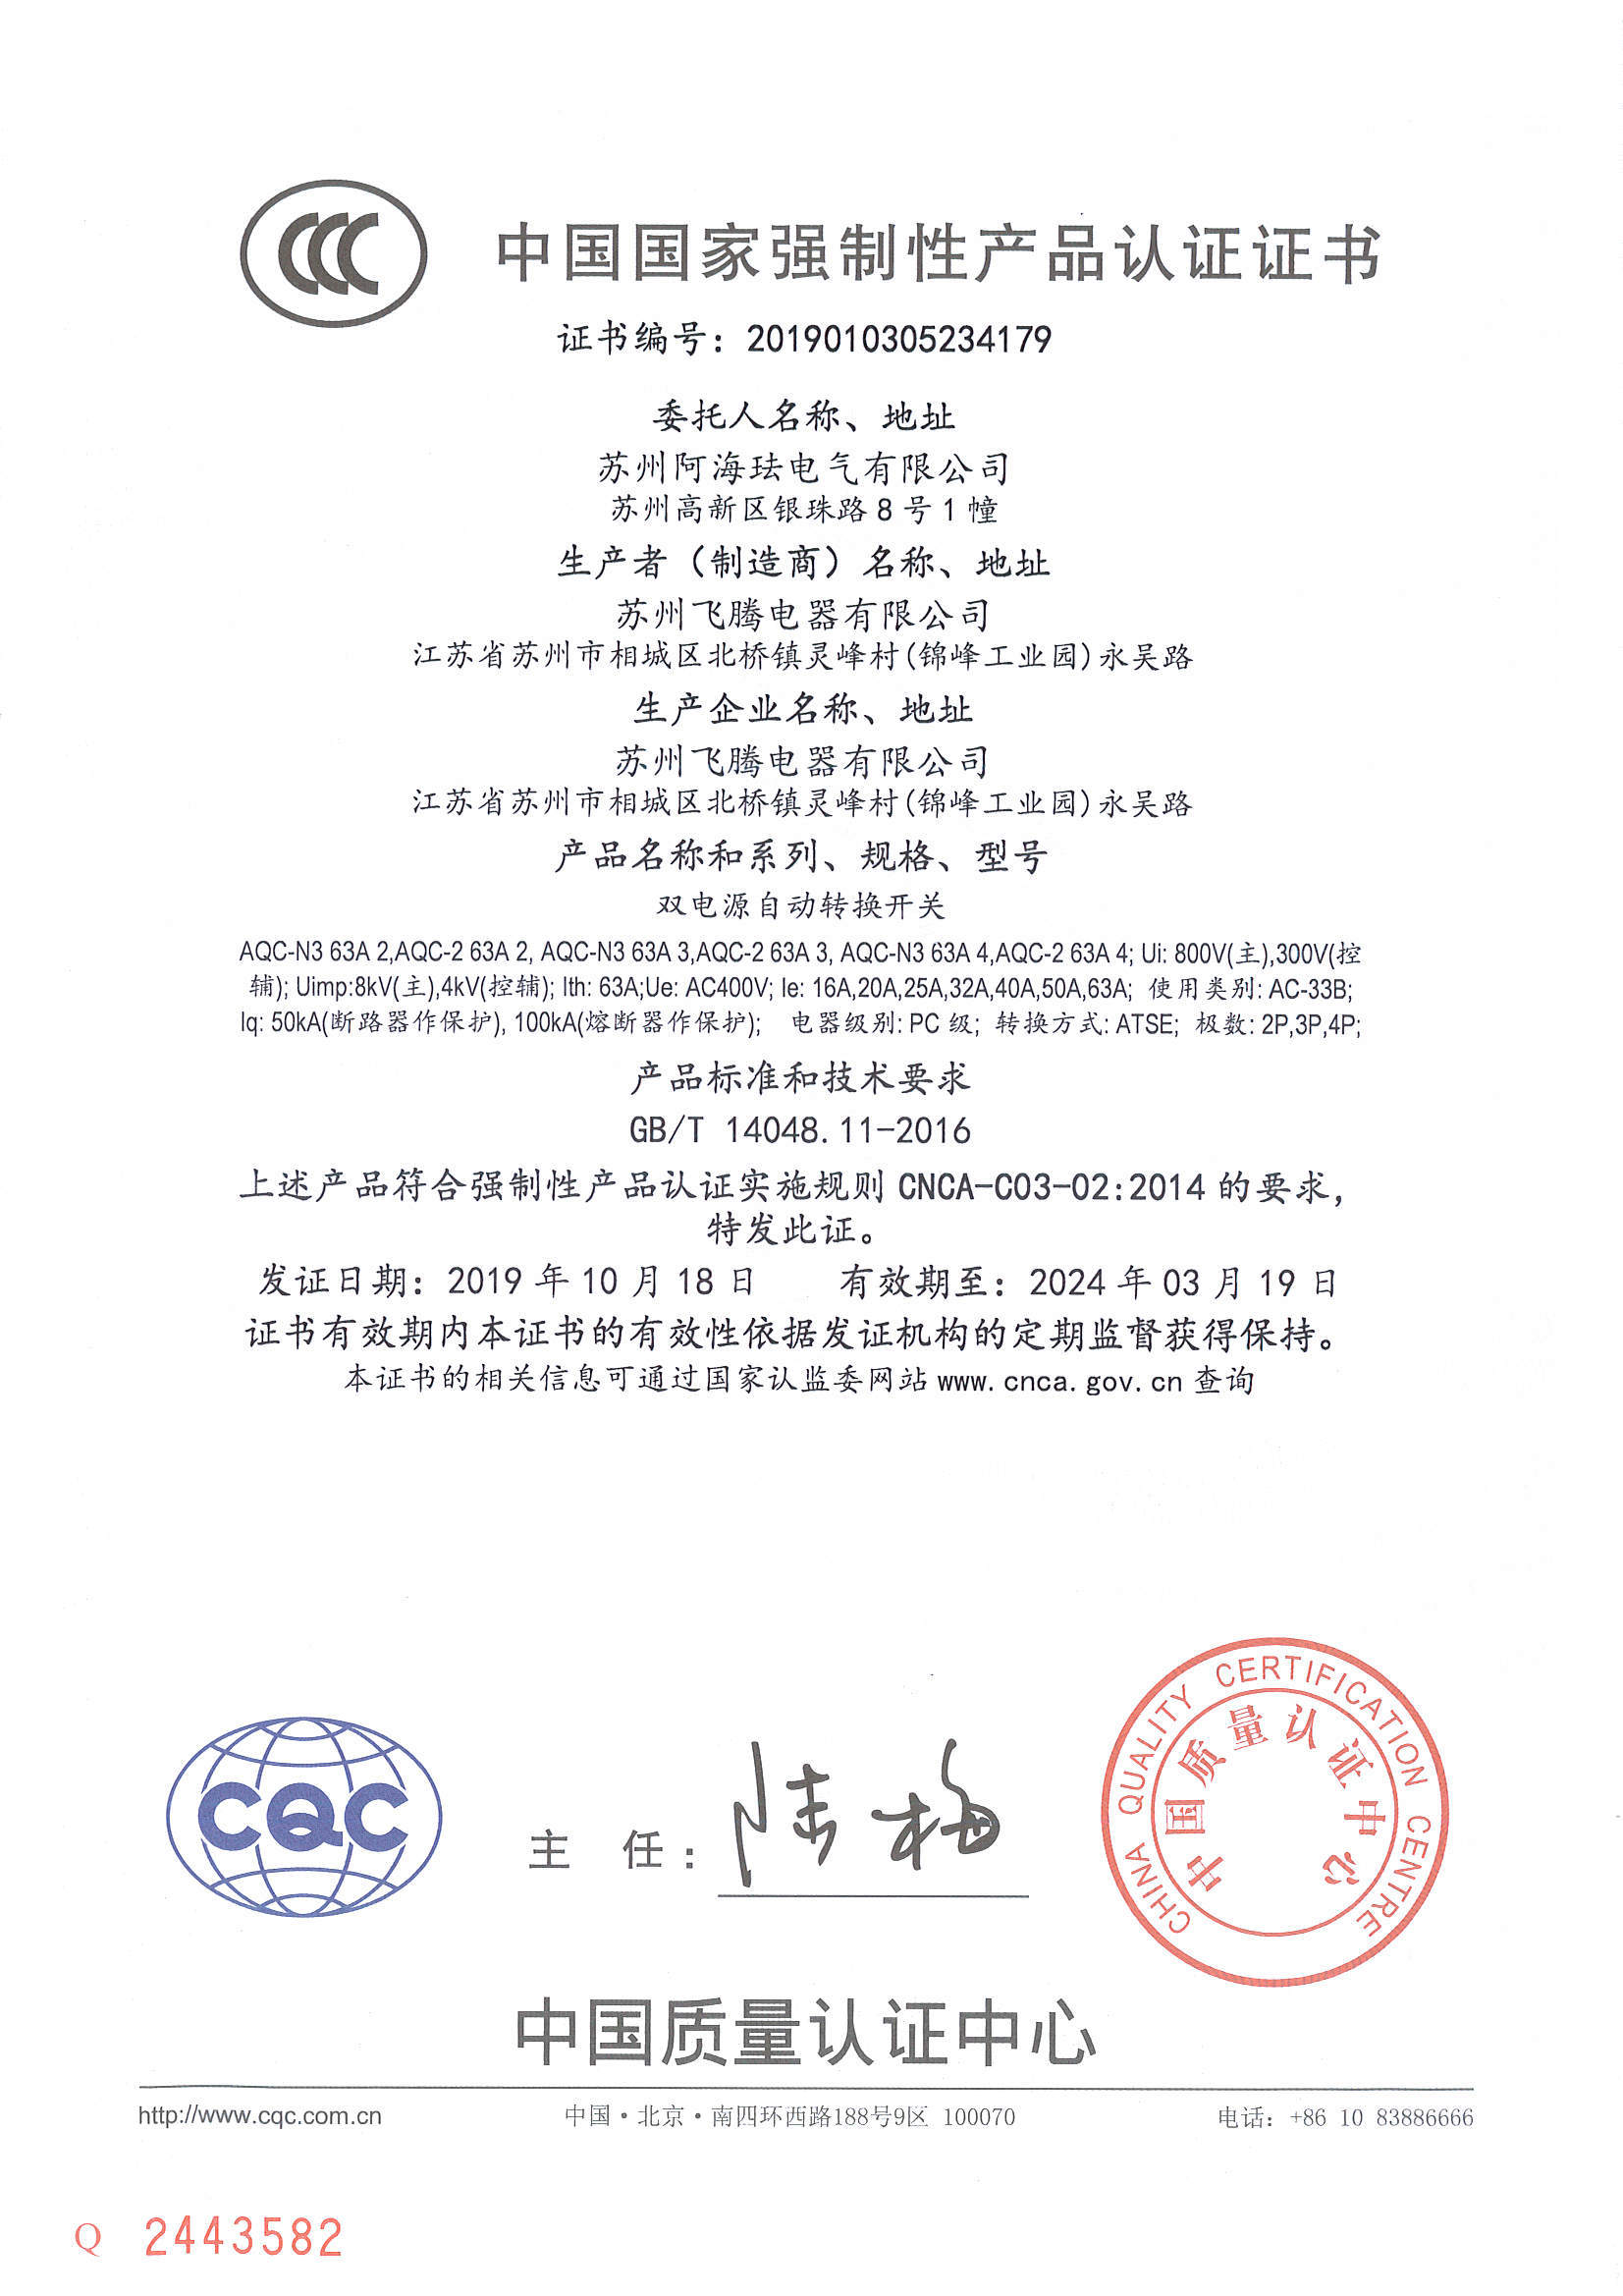 AQC63 CCC Certificate